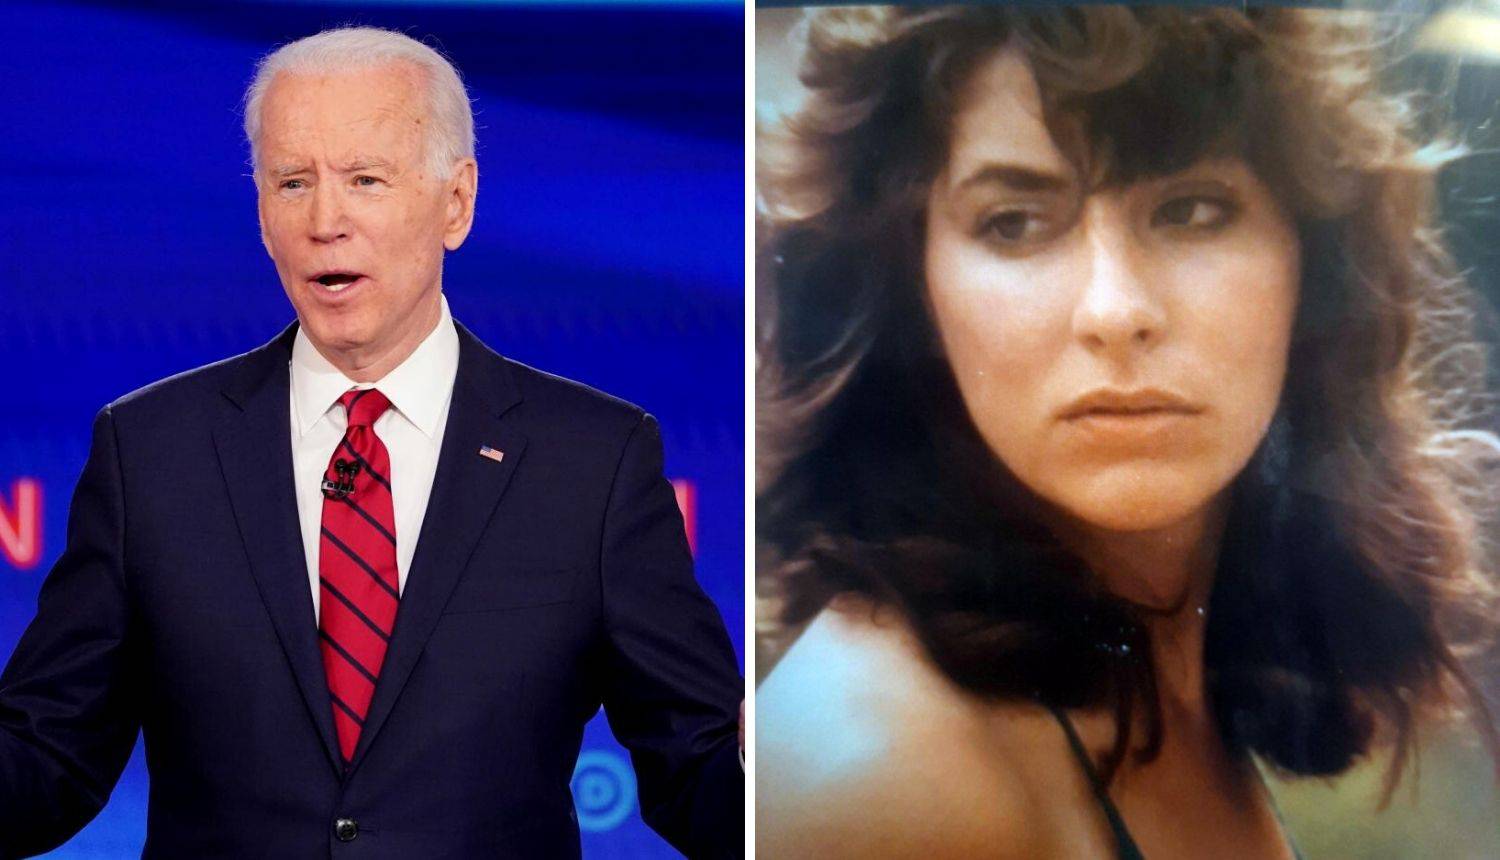 Biden odgovorio na optužbe za silovanje: 'To su sve samo laži'